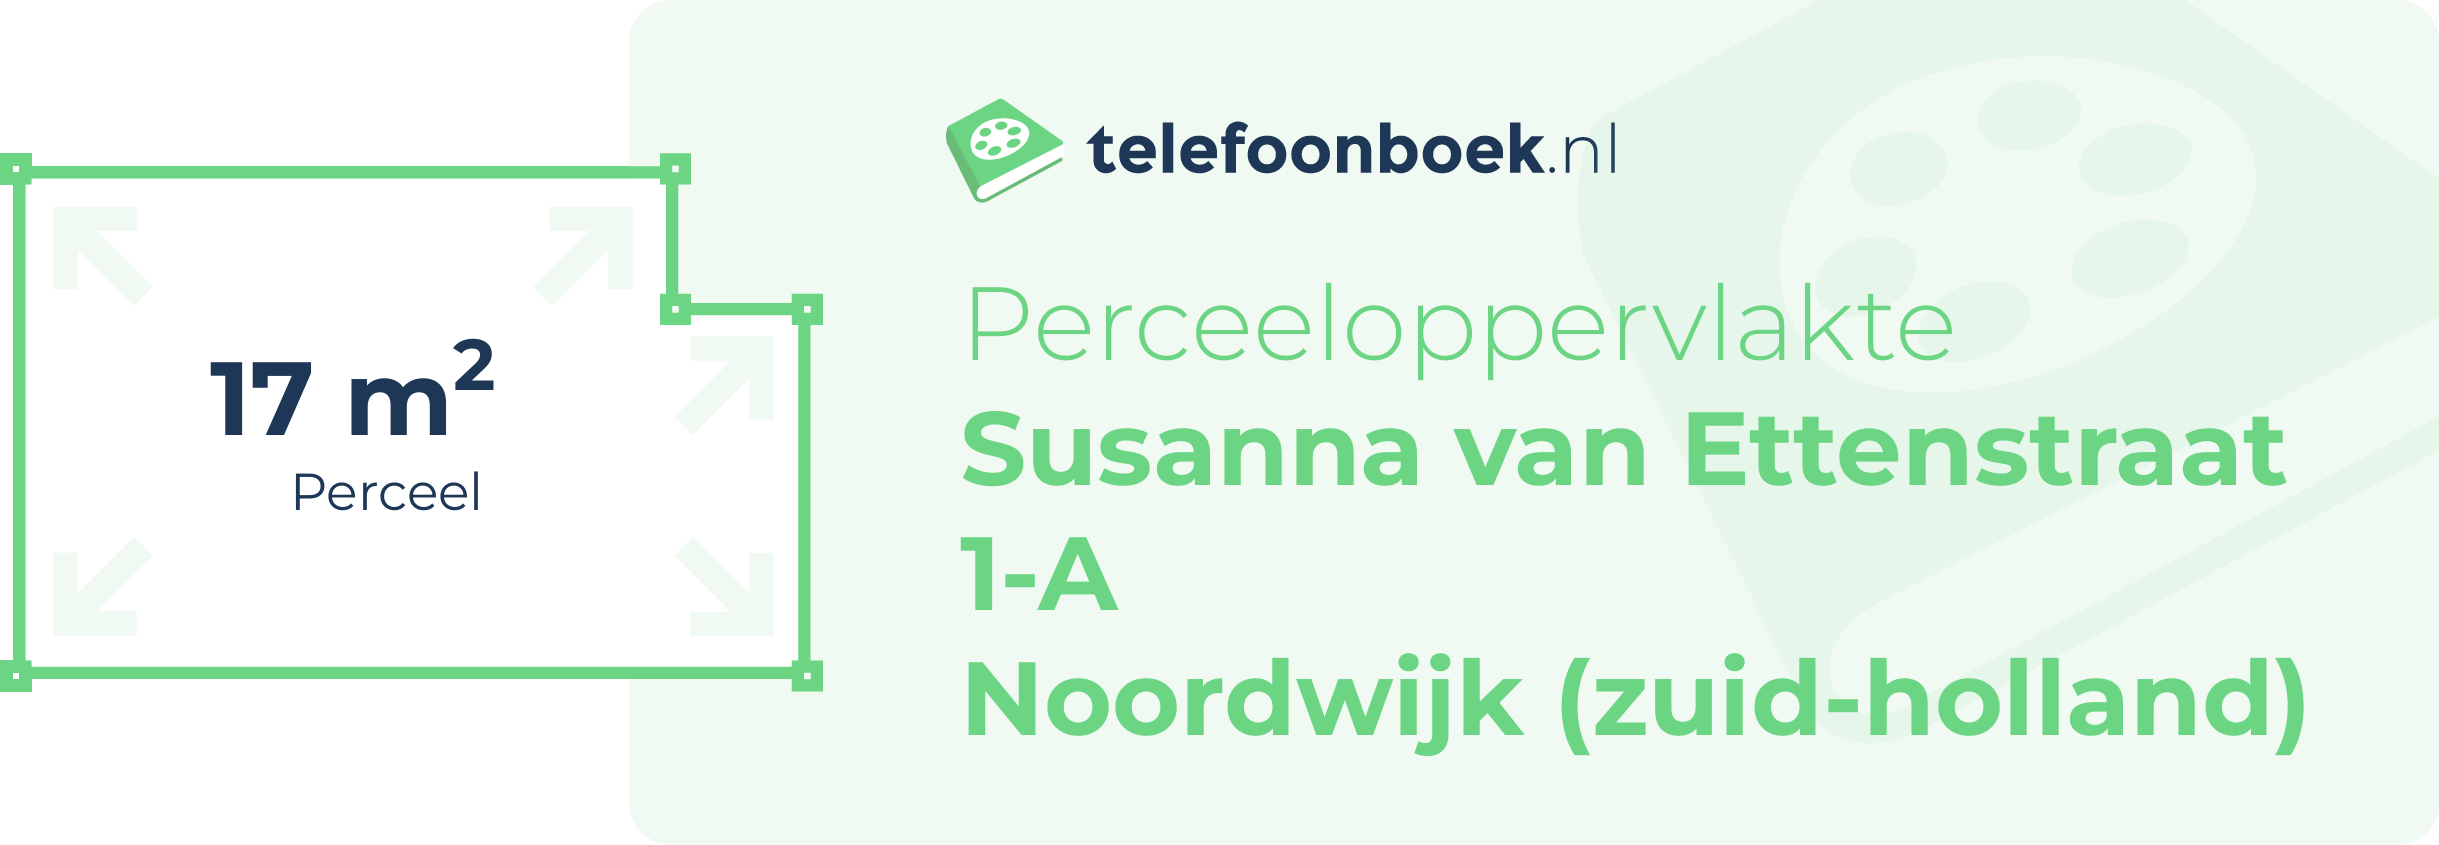 Perceeloppervlakte Susanna Van Ettenstraat 1-A Noordwijk (Zuid-Holland)